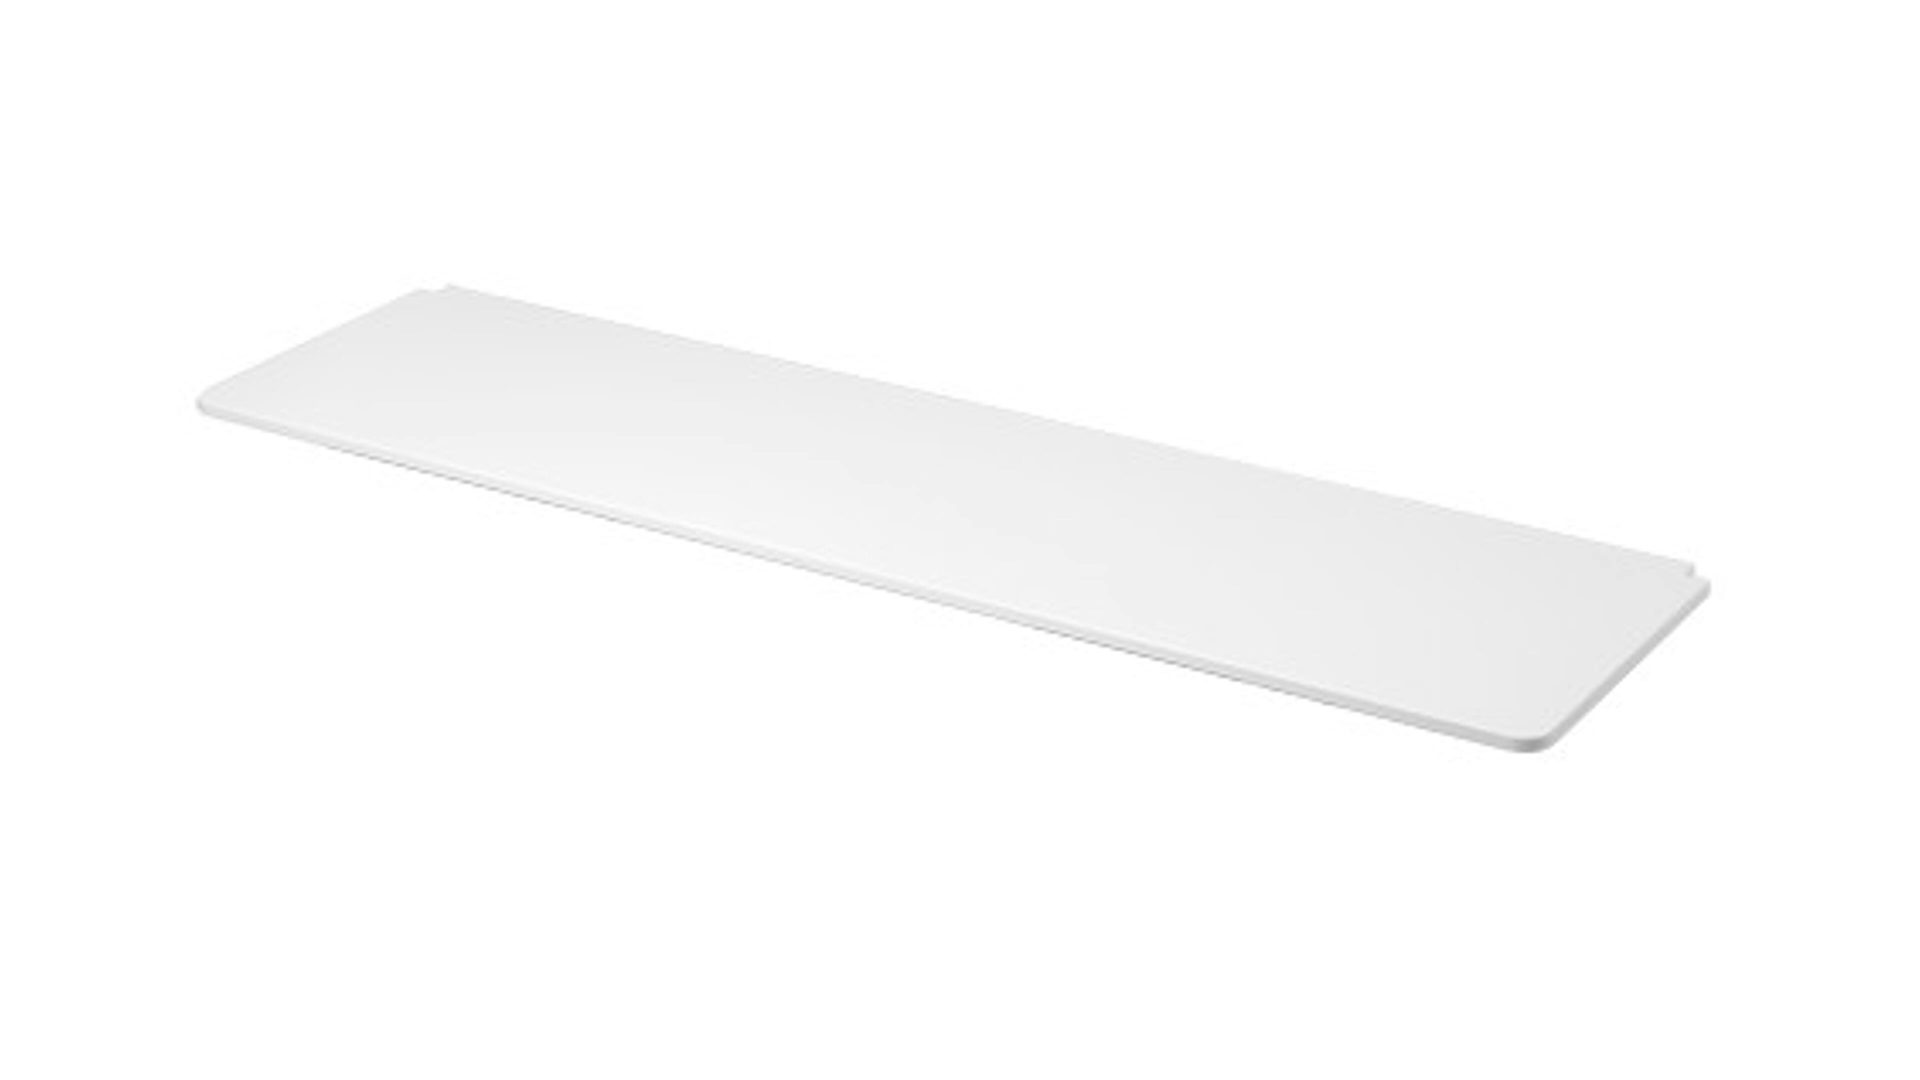 Tischplatte Flexa aus Holz in Weiß FLEXA Tischplatte für Hochbett White, weiß – Länge ca. 205 cm